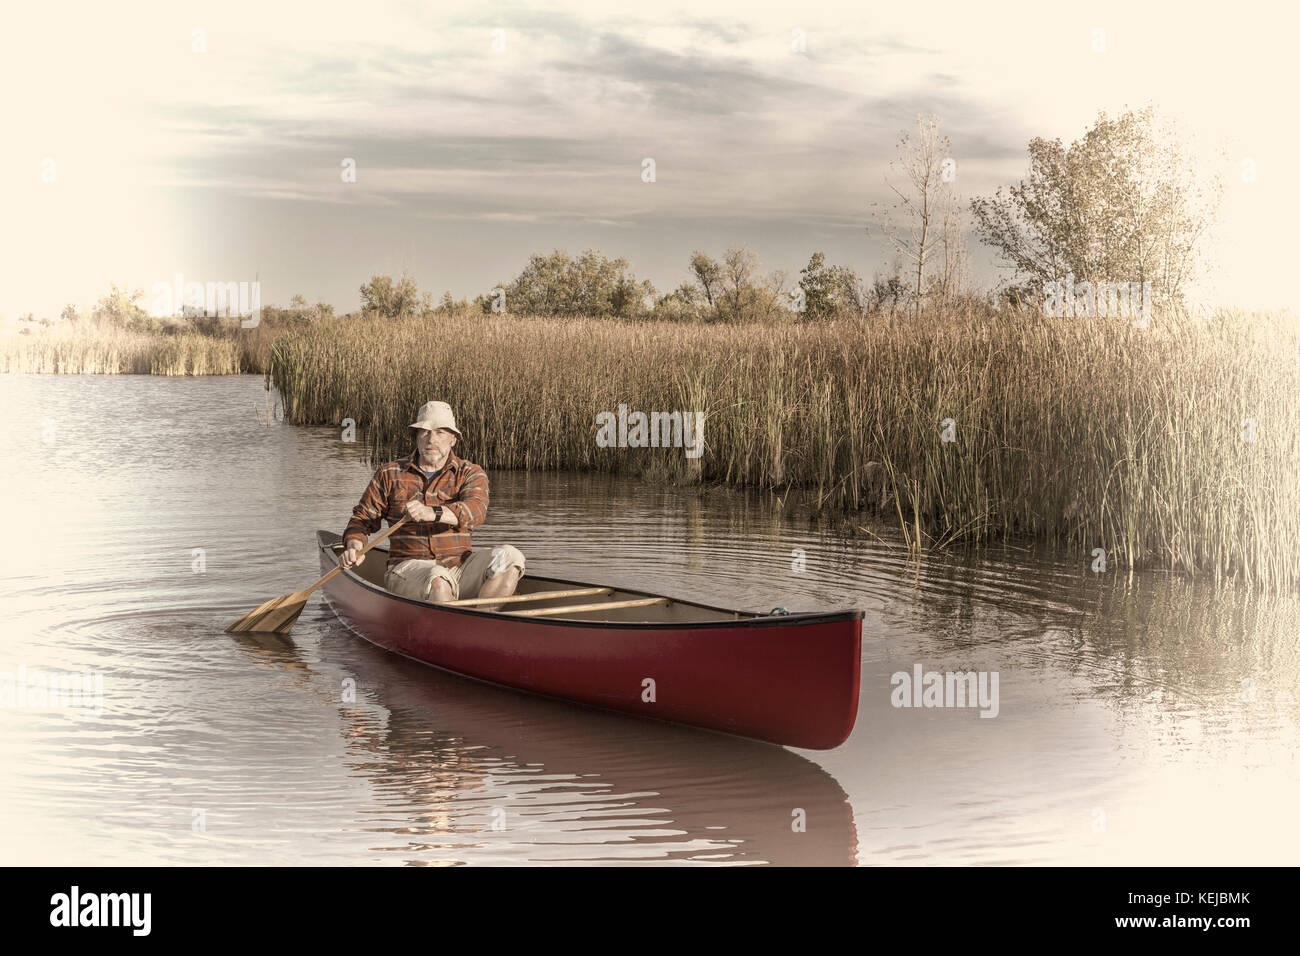 senior male paddler paddling a canoe on a calm lake, retro opalotype toning Stock Photo